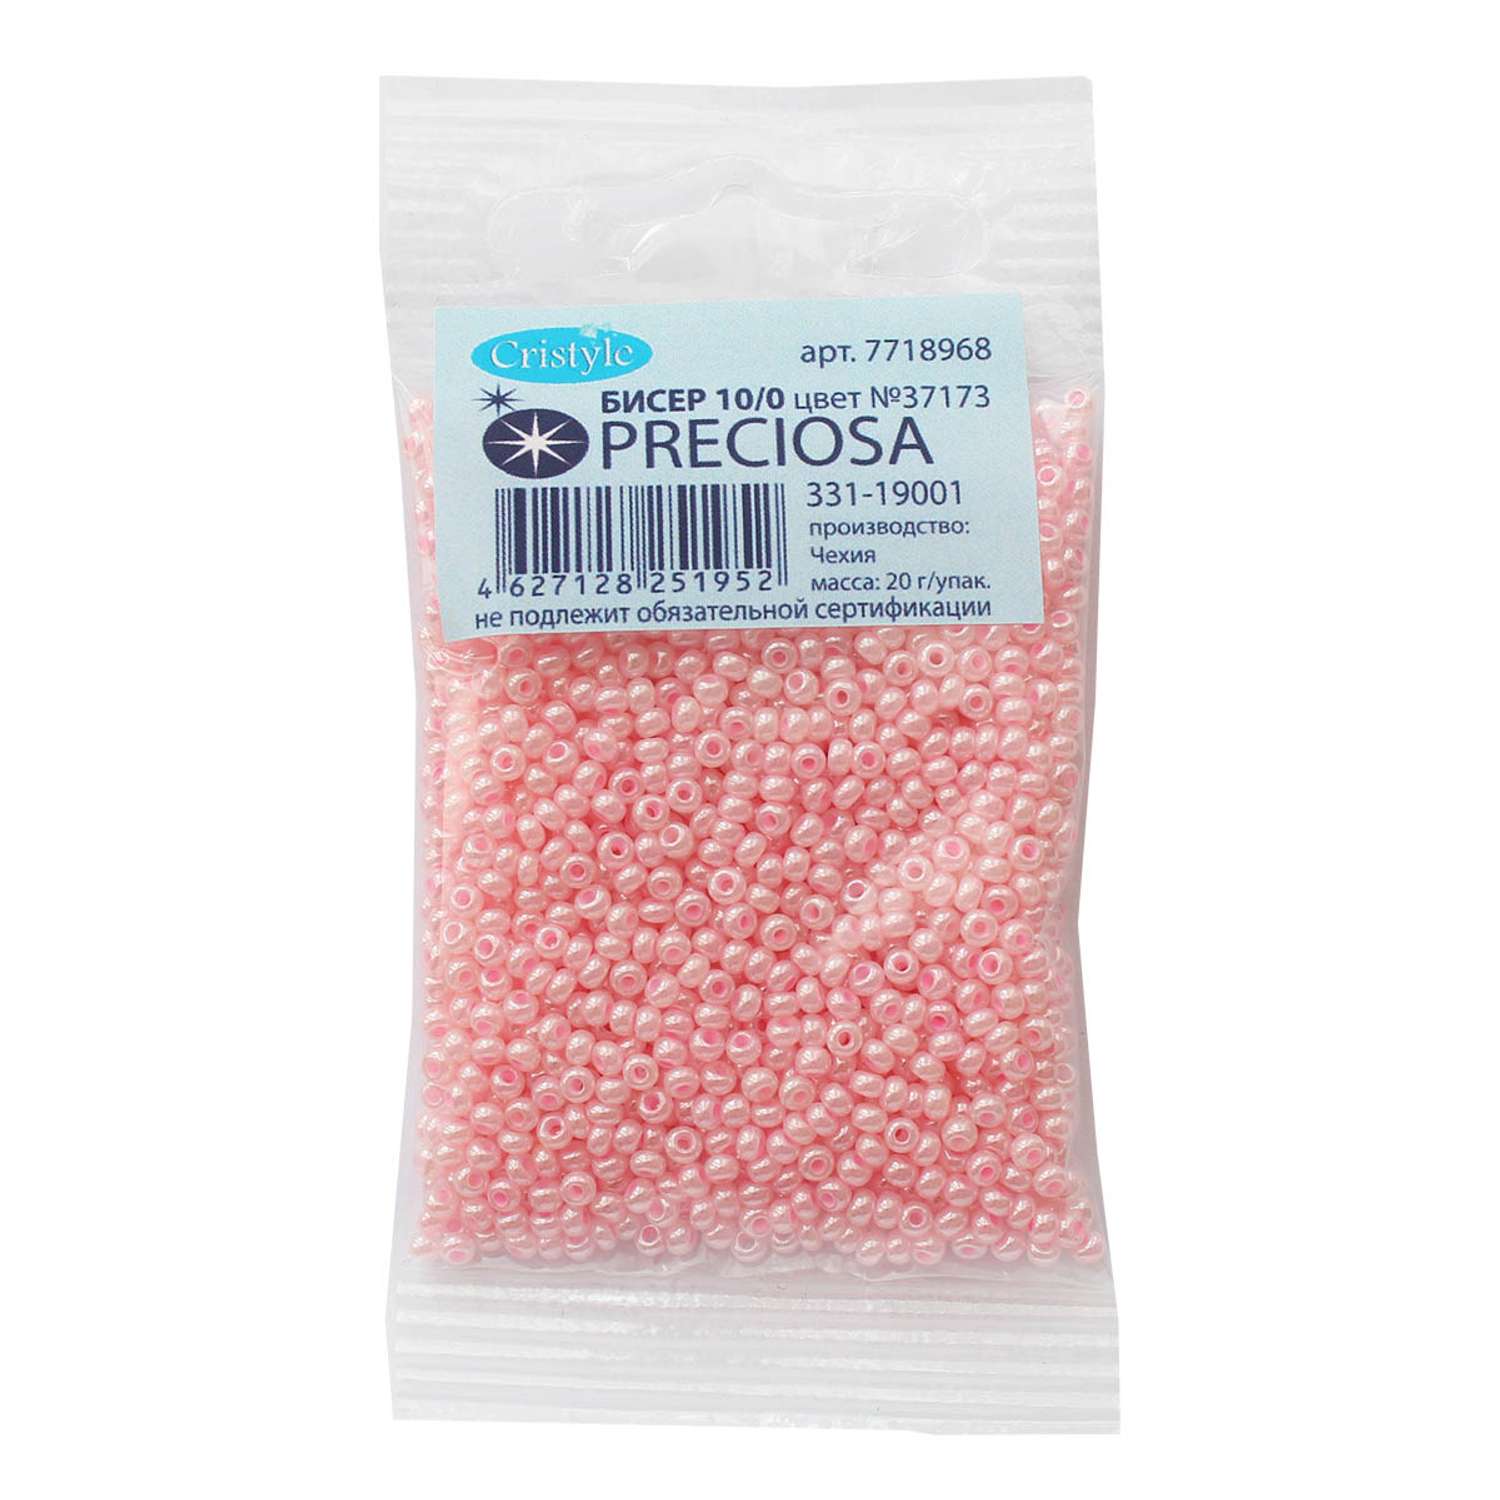 Бисер Preciosa чешский жемчужный 10/0 20 гр Прециоза 37173 розовый - фото 3